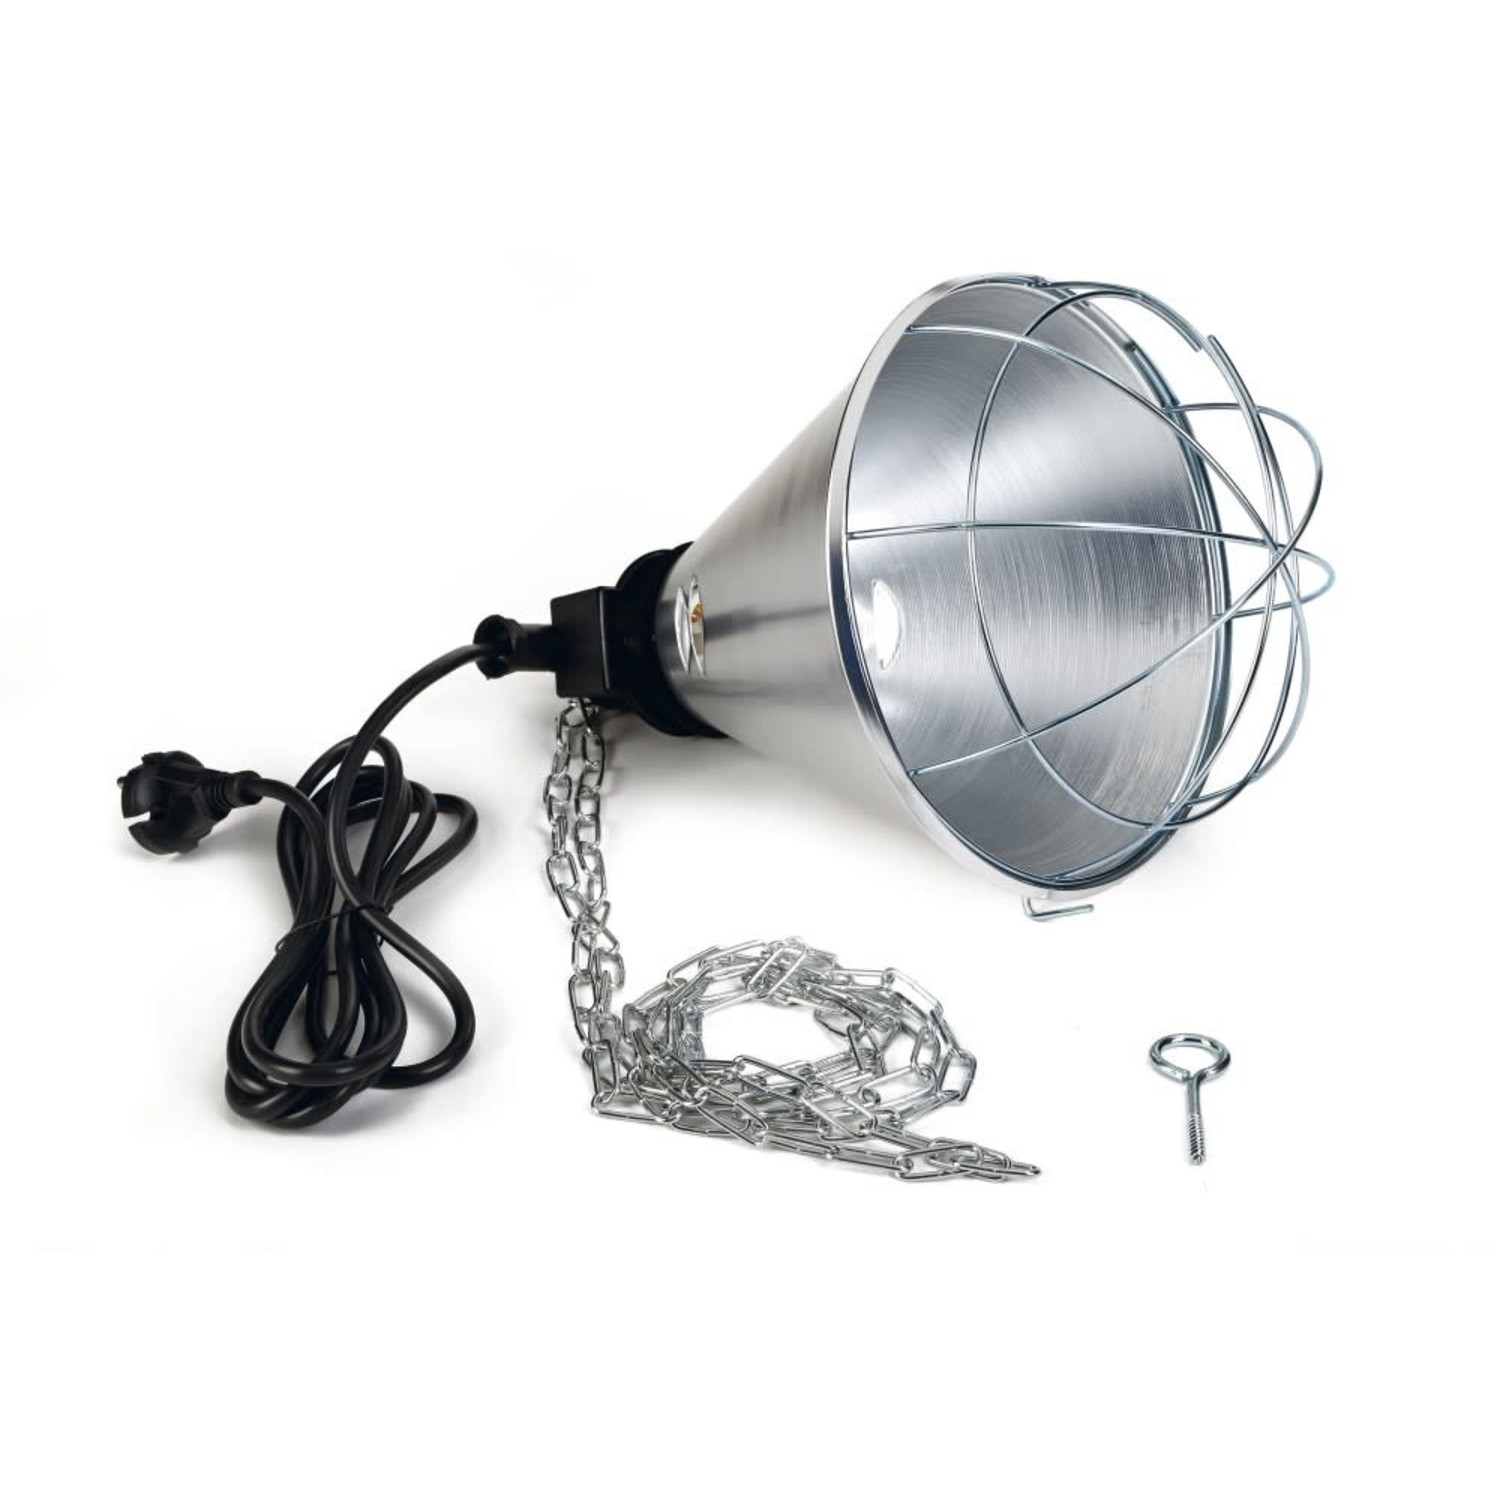 Wirwar onthouden haspel Warmtelamp Lampenkap met 2.5 m snoer - exclusief lamp - D-tails